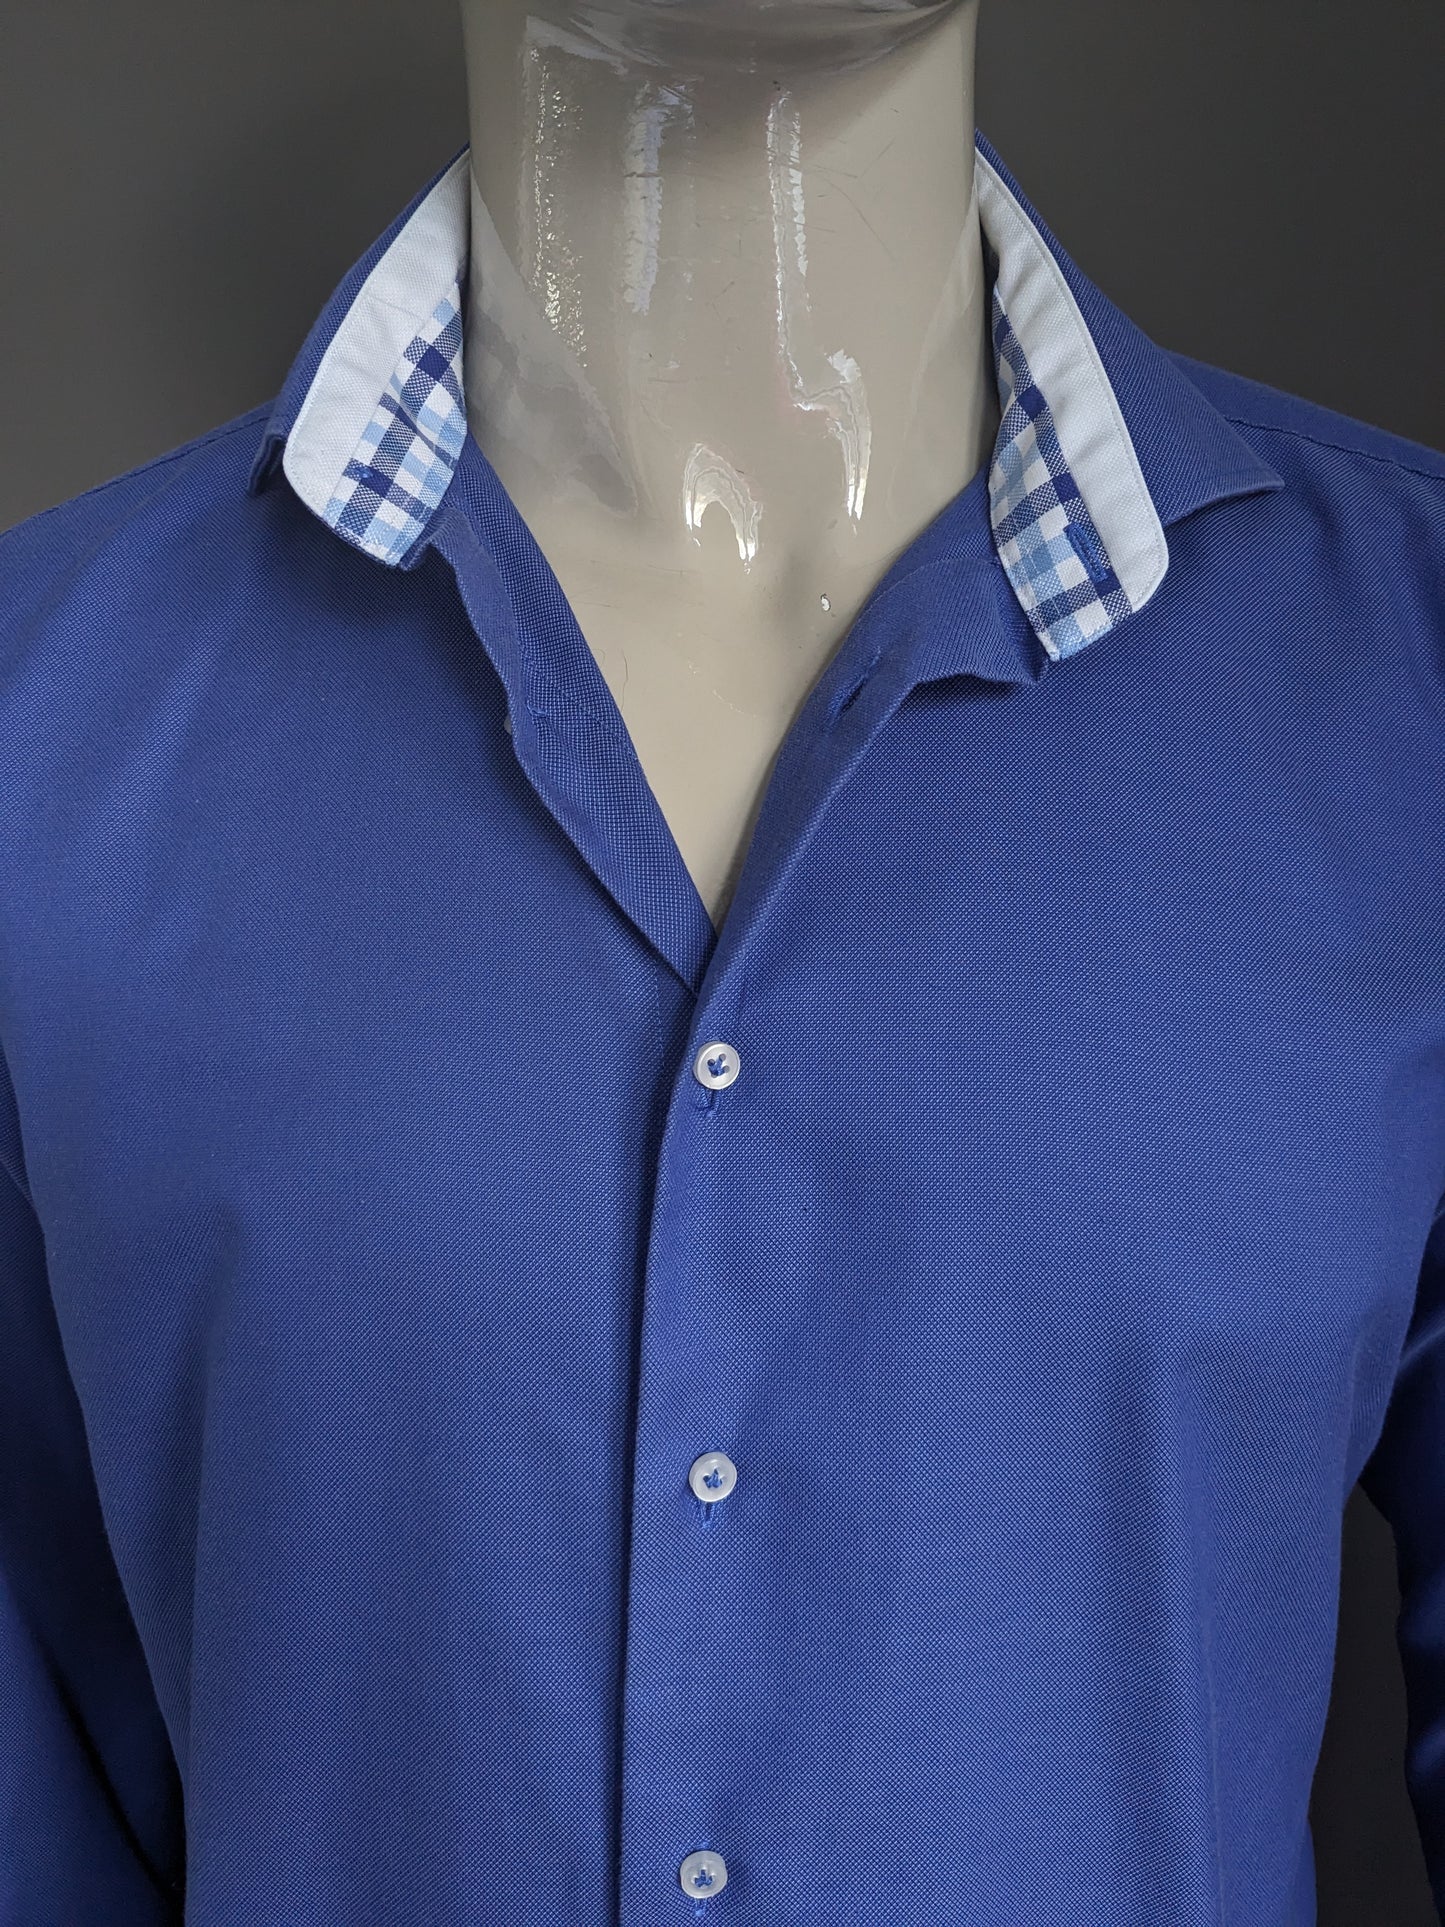 Profuomo -Hemd. Blau gemischt. Größe 42 / L. Slim Fit.